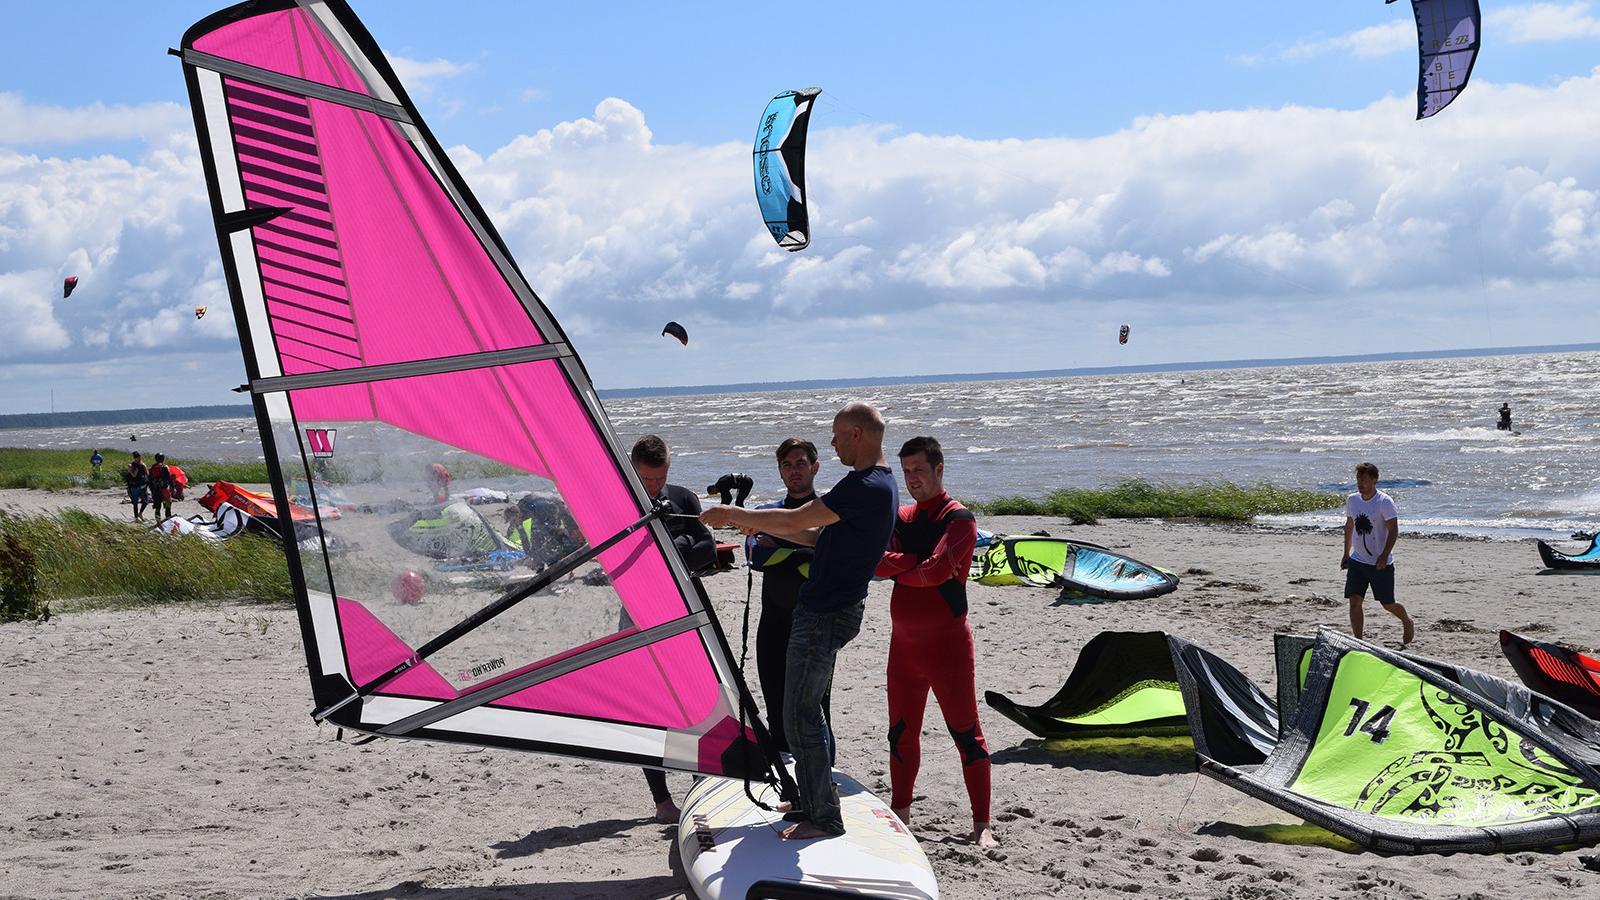 Surf Center purjelaua rent ja koolitus Pärnu rannas